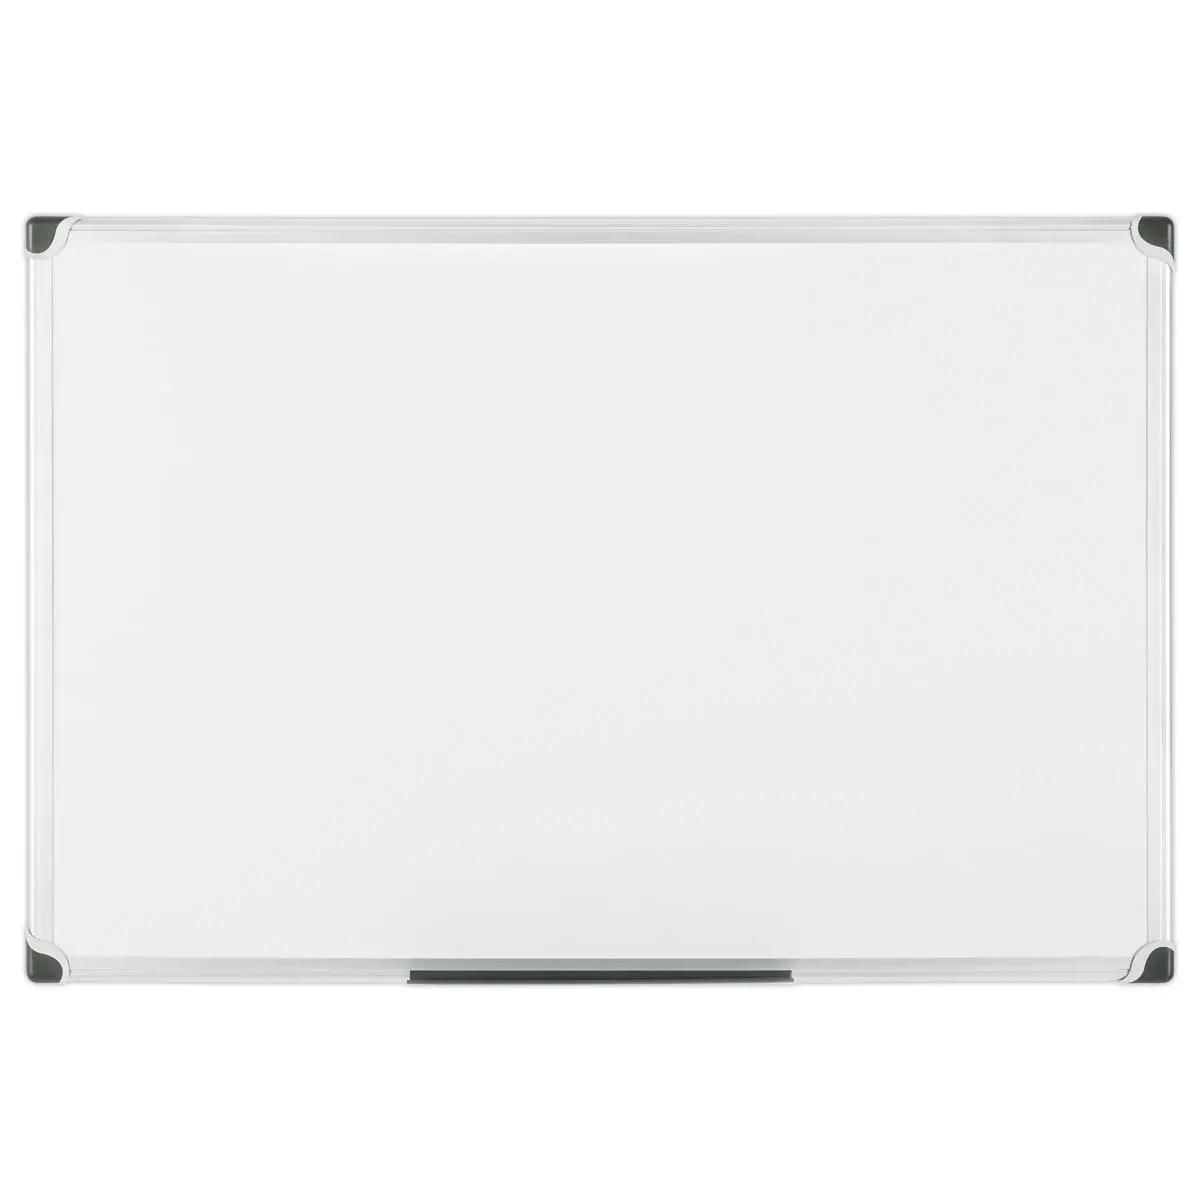 Tableau blanc émaillé uni - 90 x 180 cm - BI-OFFICE photo du produit